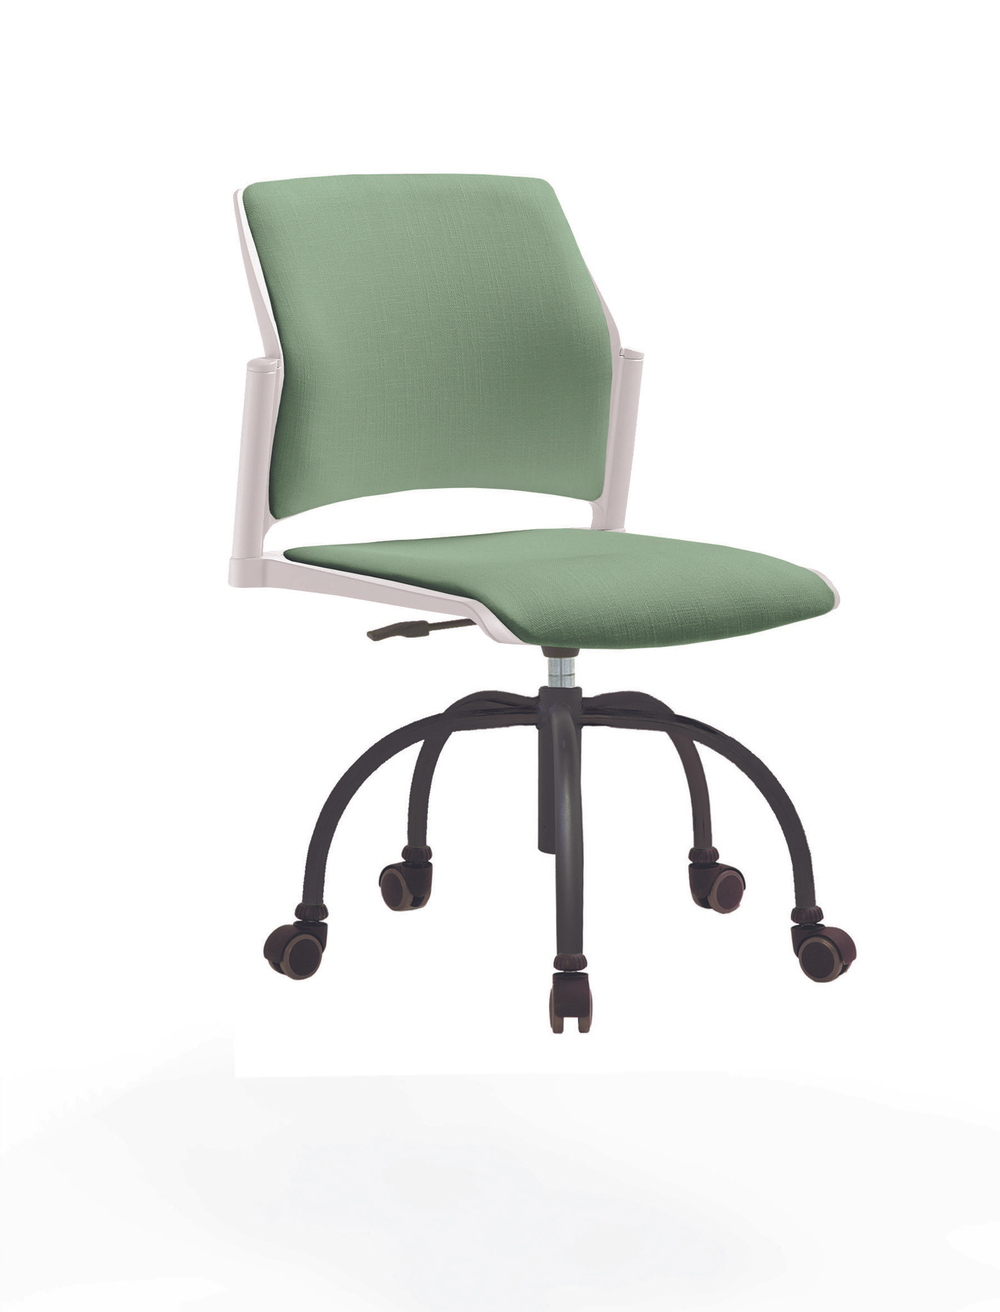 Кресло Rewind каркас черный, пластик белый, база паук краска черная, без подлокотников, сиденье и спинка бледно-зеленые